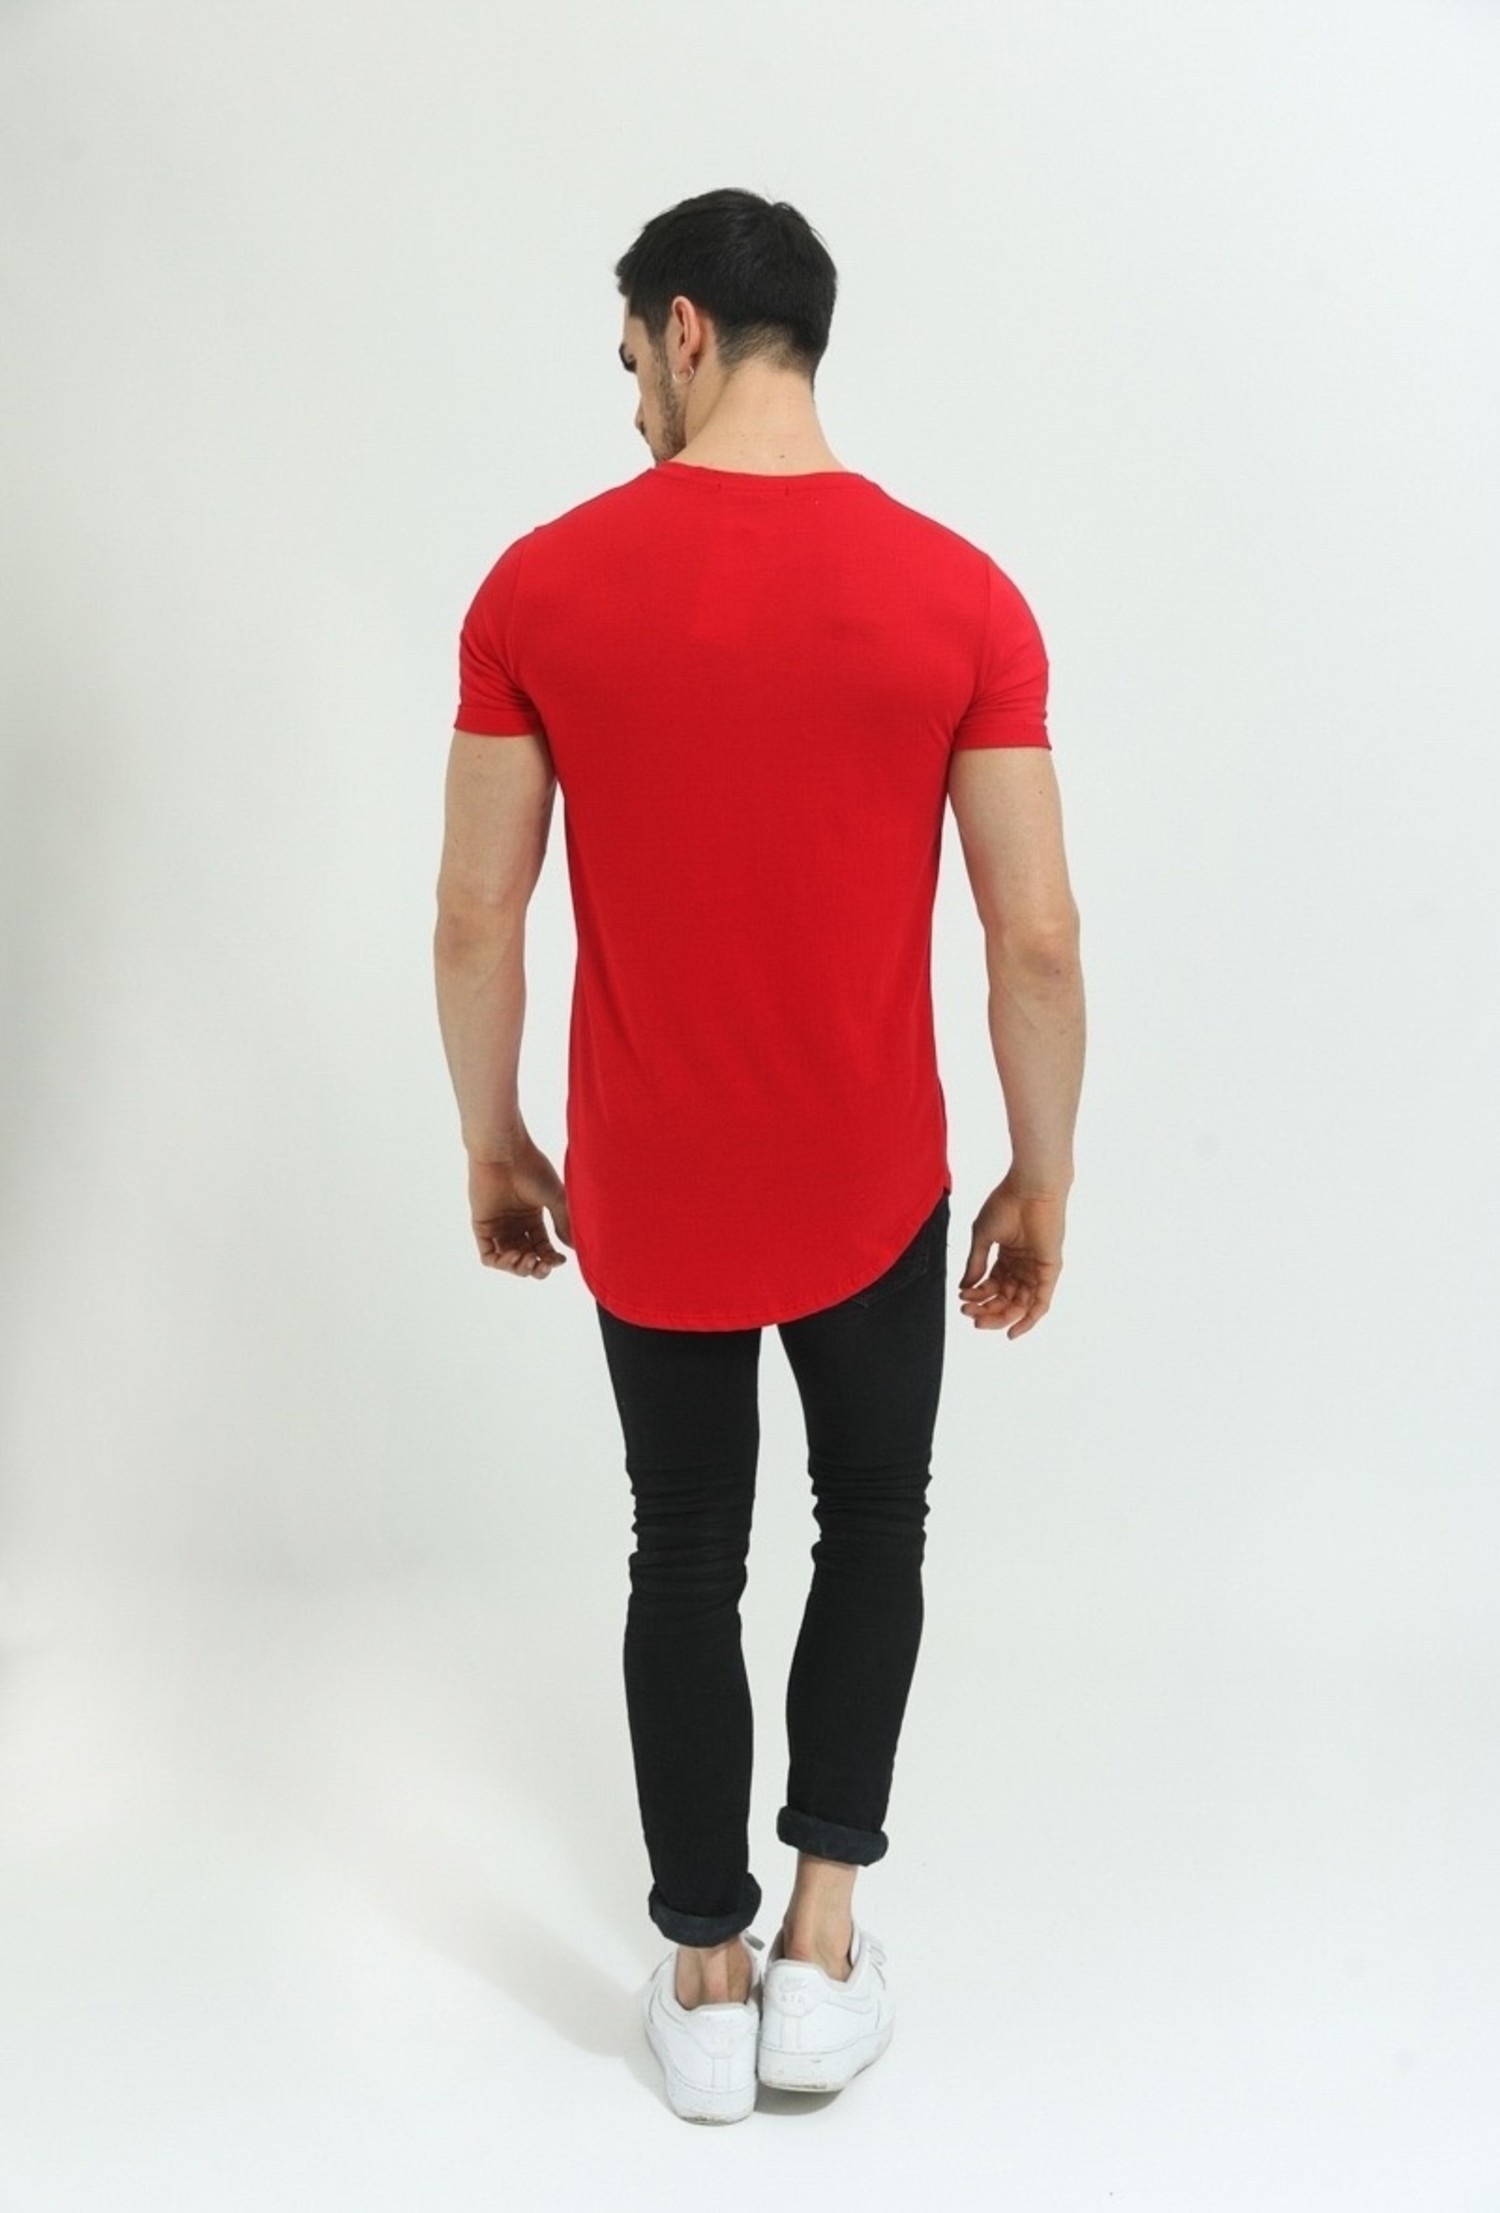 Rode T-shirt Heren - verzending | VALENCI VALENCI